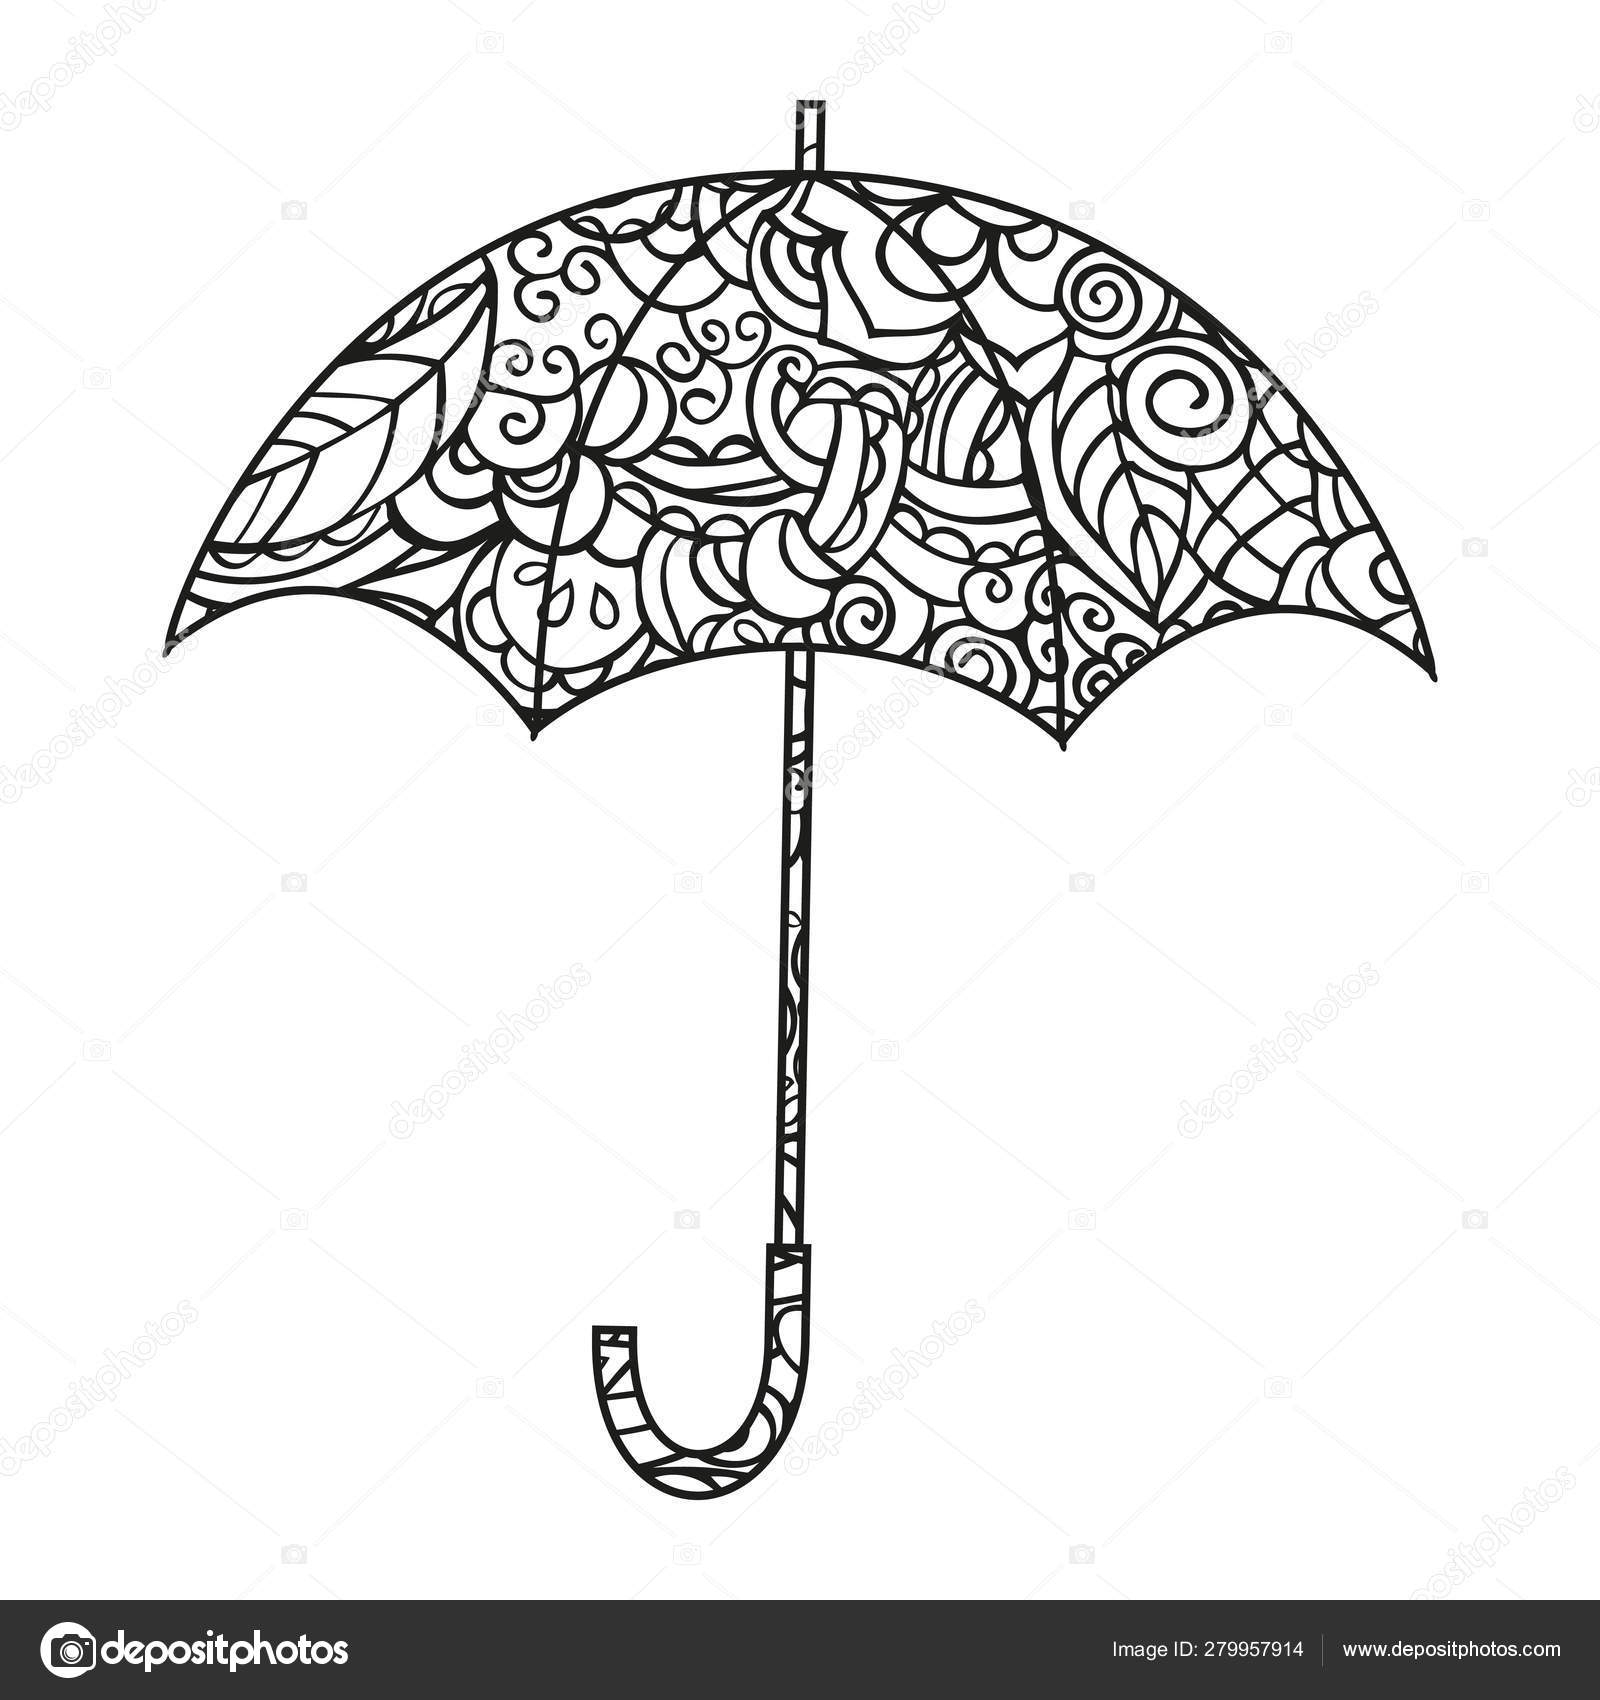 Зонтик раскраска с узором